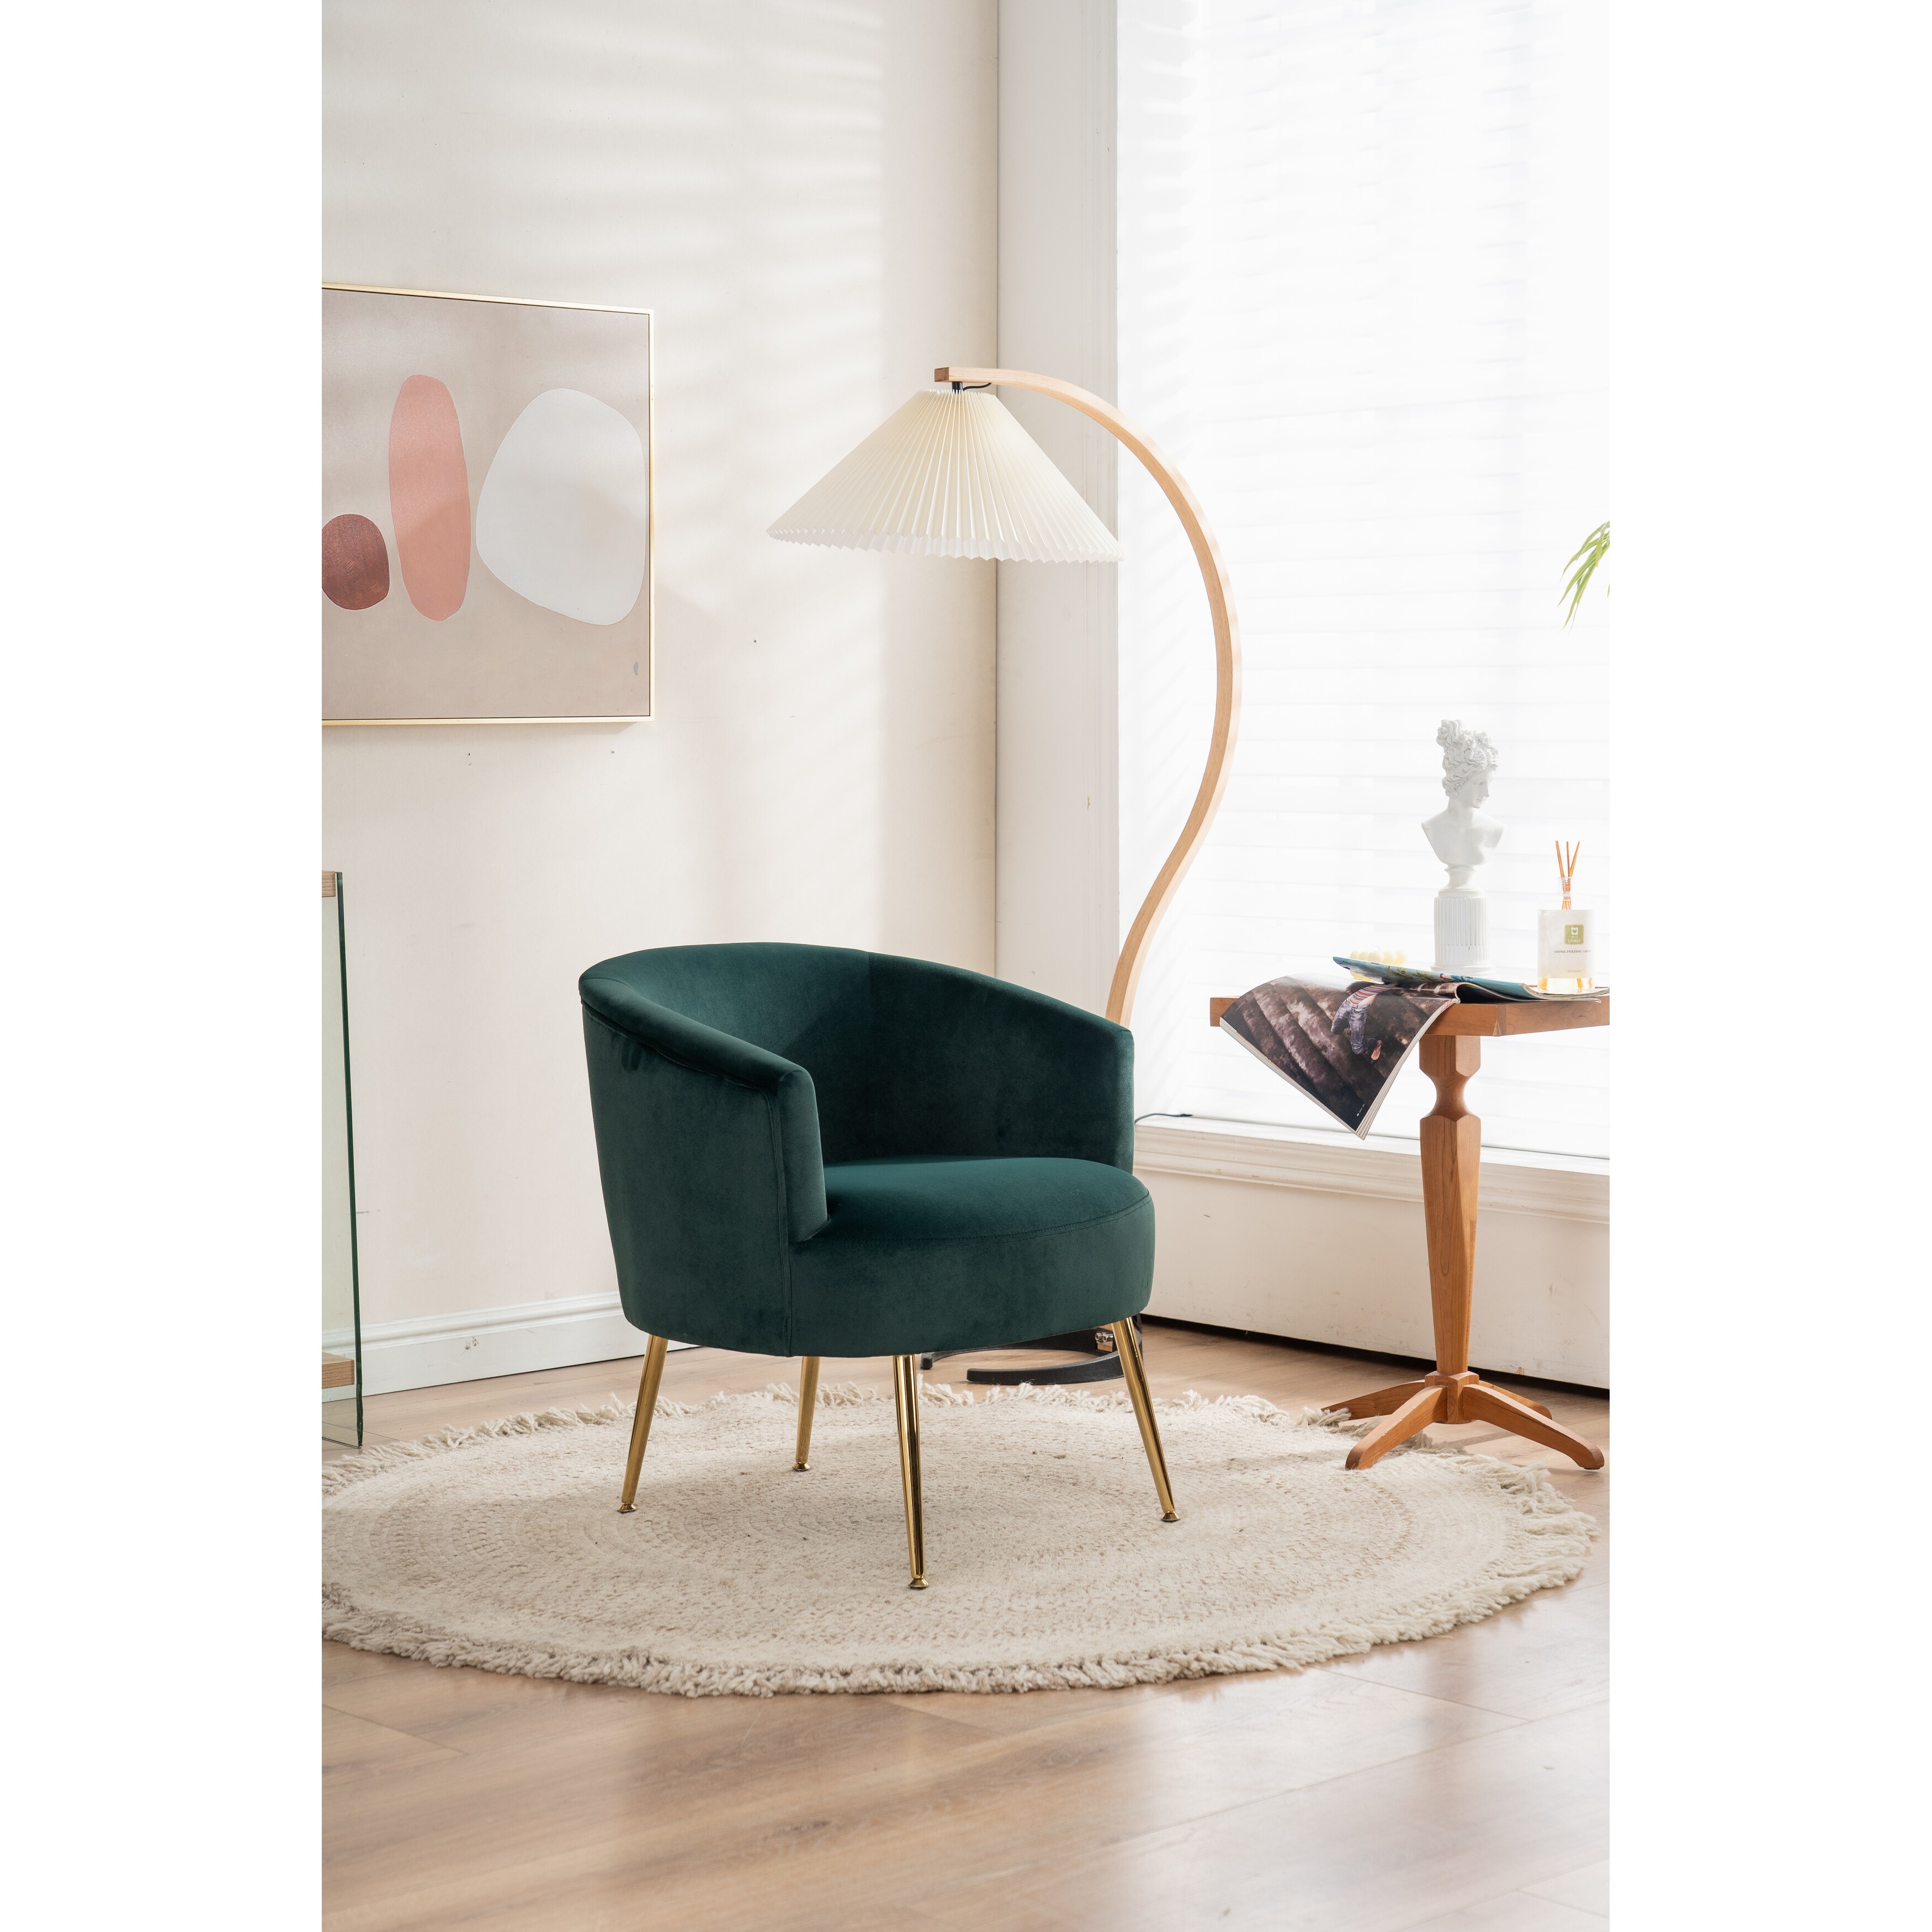 Green Velvet Upholstered Accent Swivel Chair Barrel Living Room